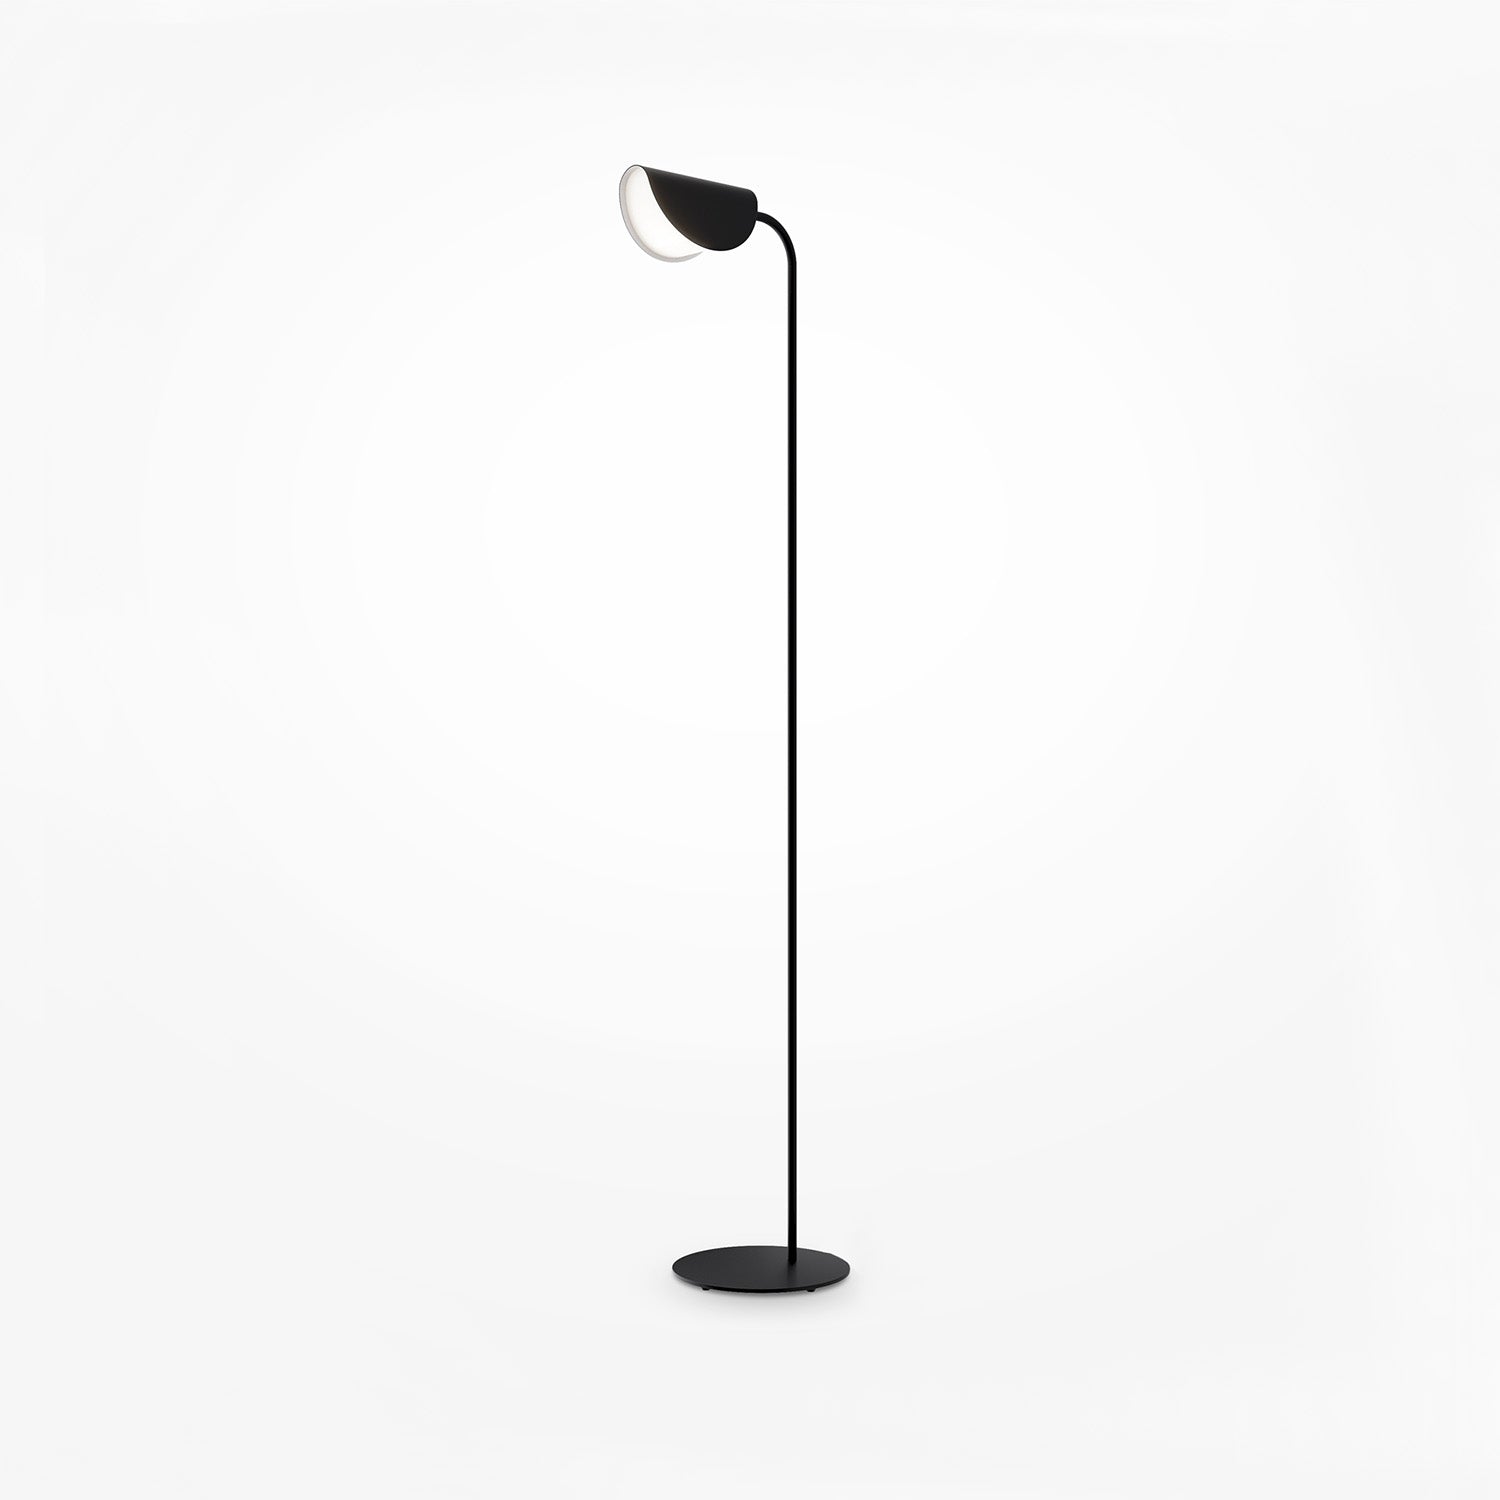 MOLLIS – Stehlampe auf schwarzem Boden, Design-Wohnzimmer oder Büro